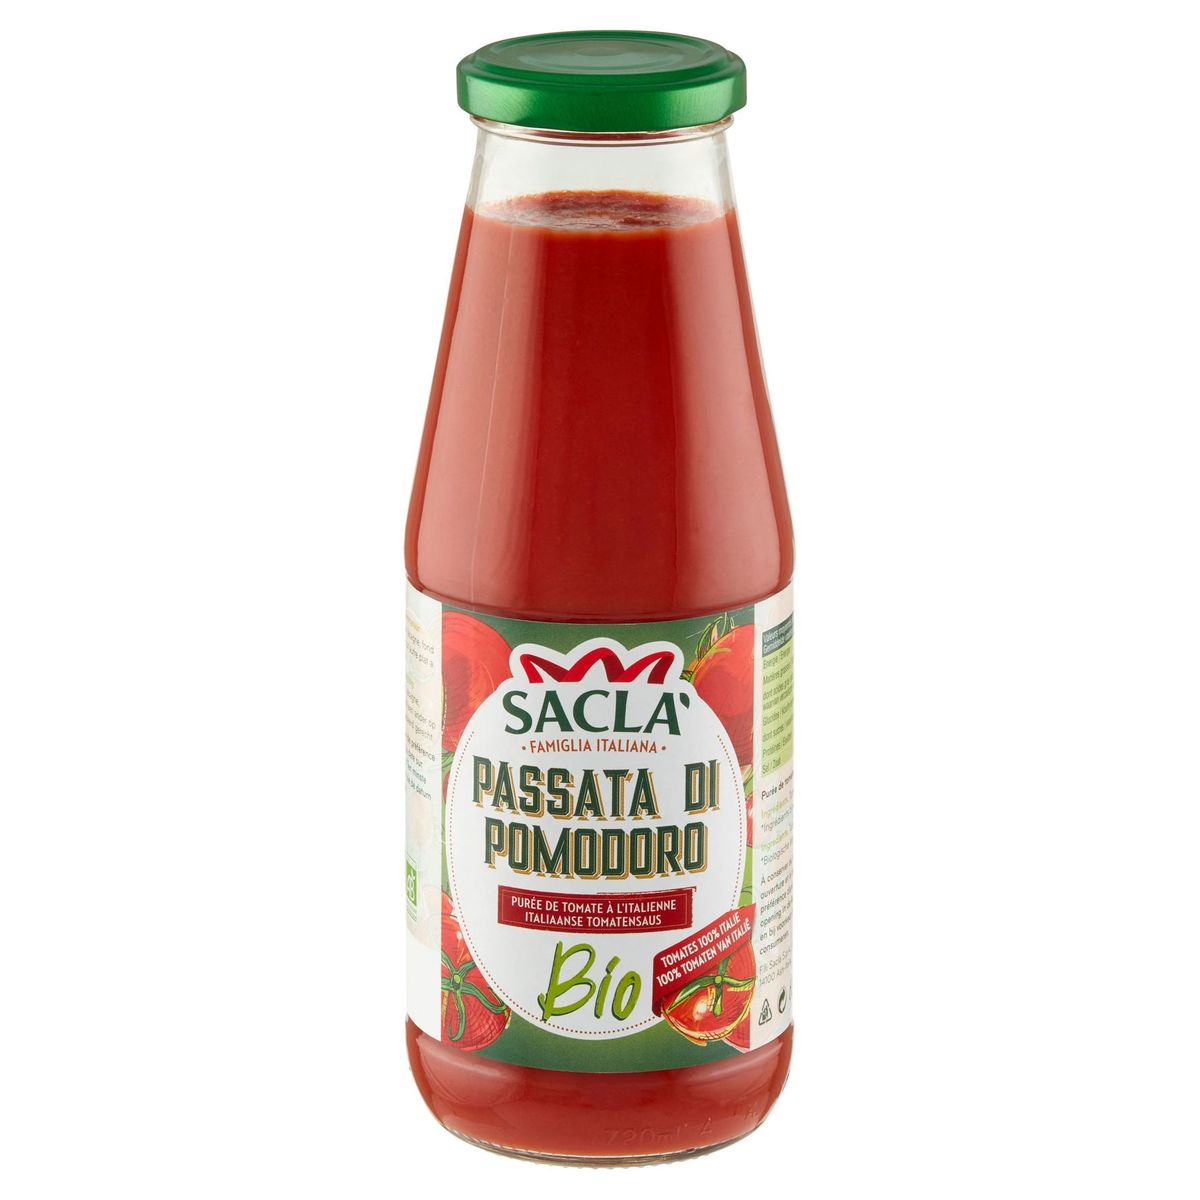 Sacla Passata di Pomodoro Purée de Tomate à l'Italienne Bio 680 g